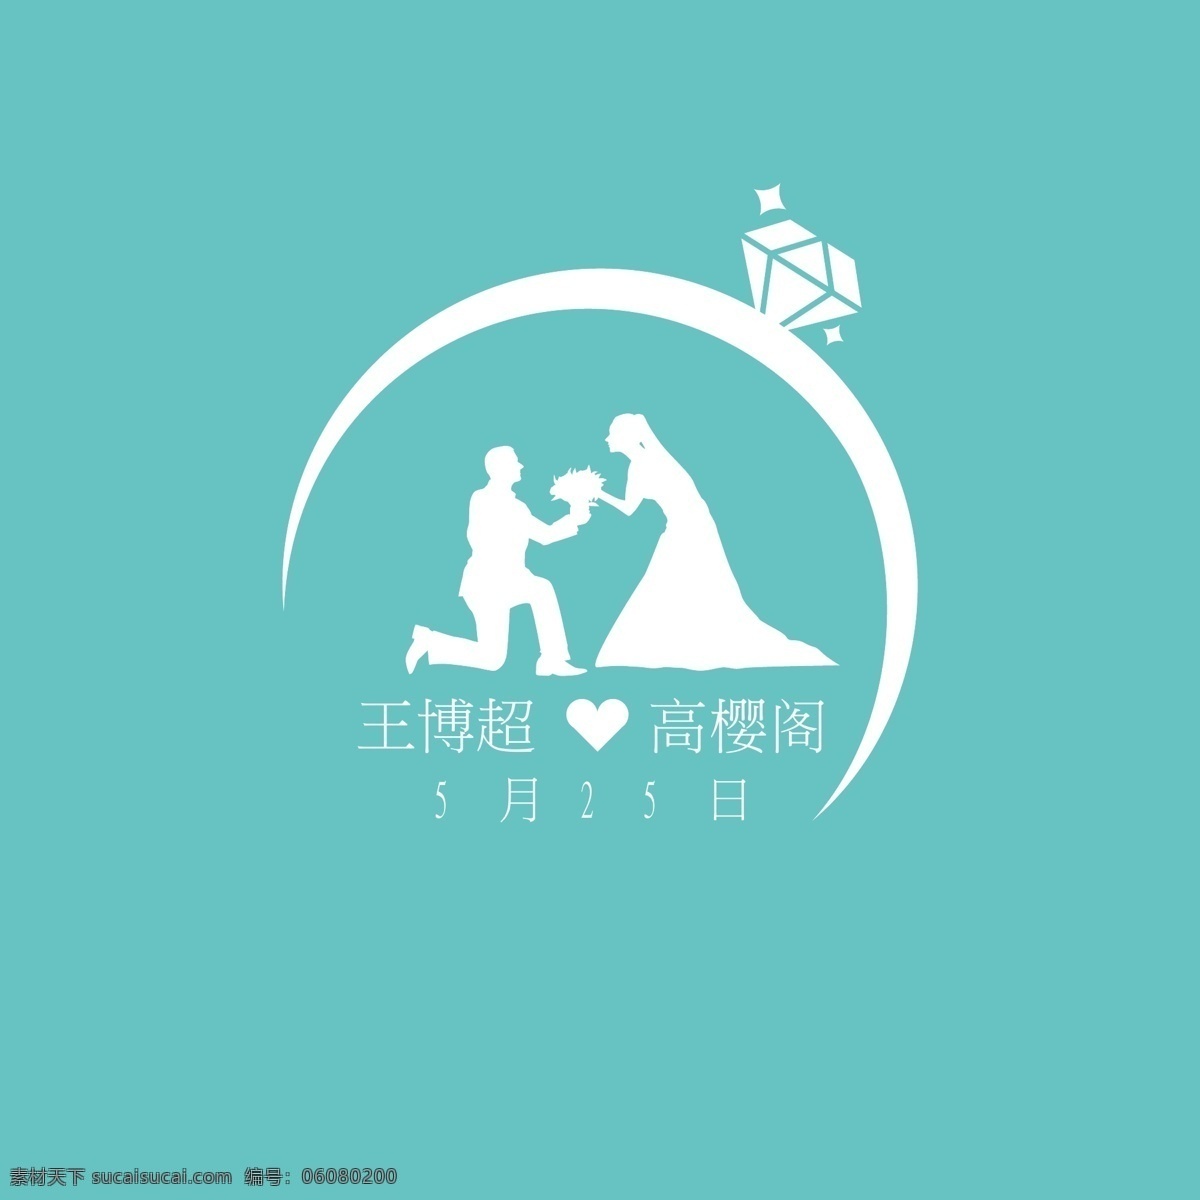 婚纱 店 logo 婚礼 私人订制 求婚 钻戒 戒指 白色 唯美 高端 标志图标 企业 标志